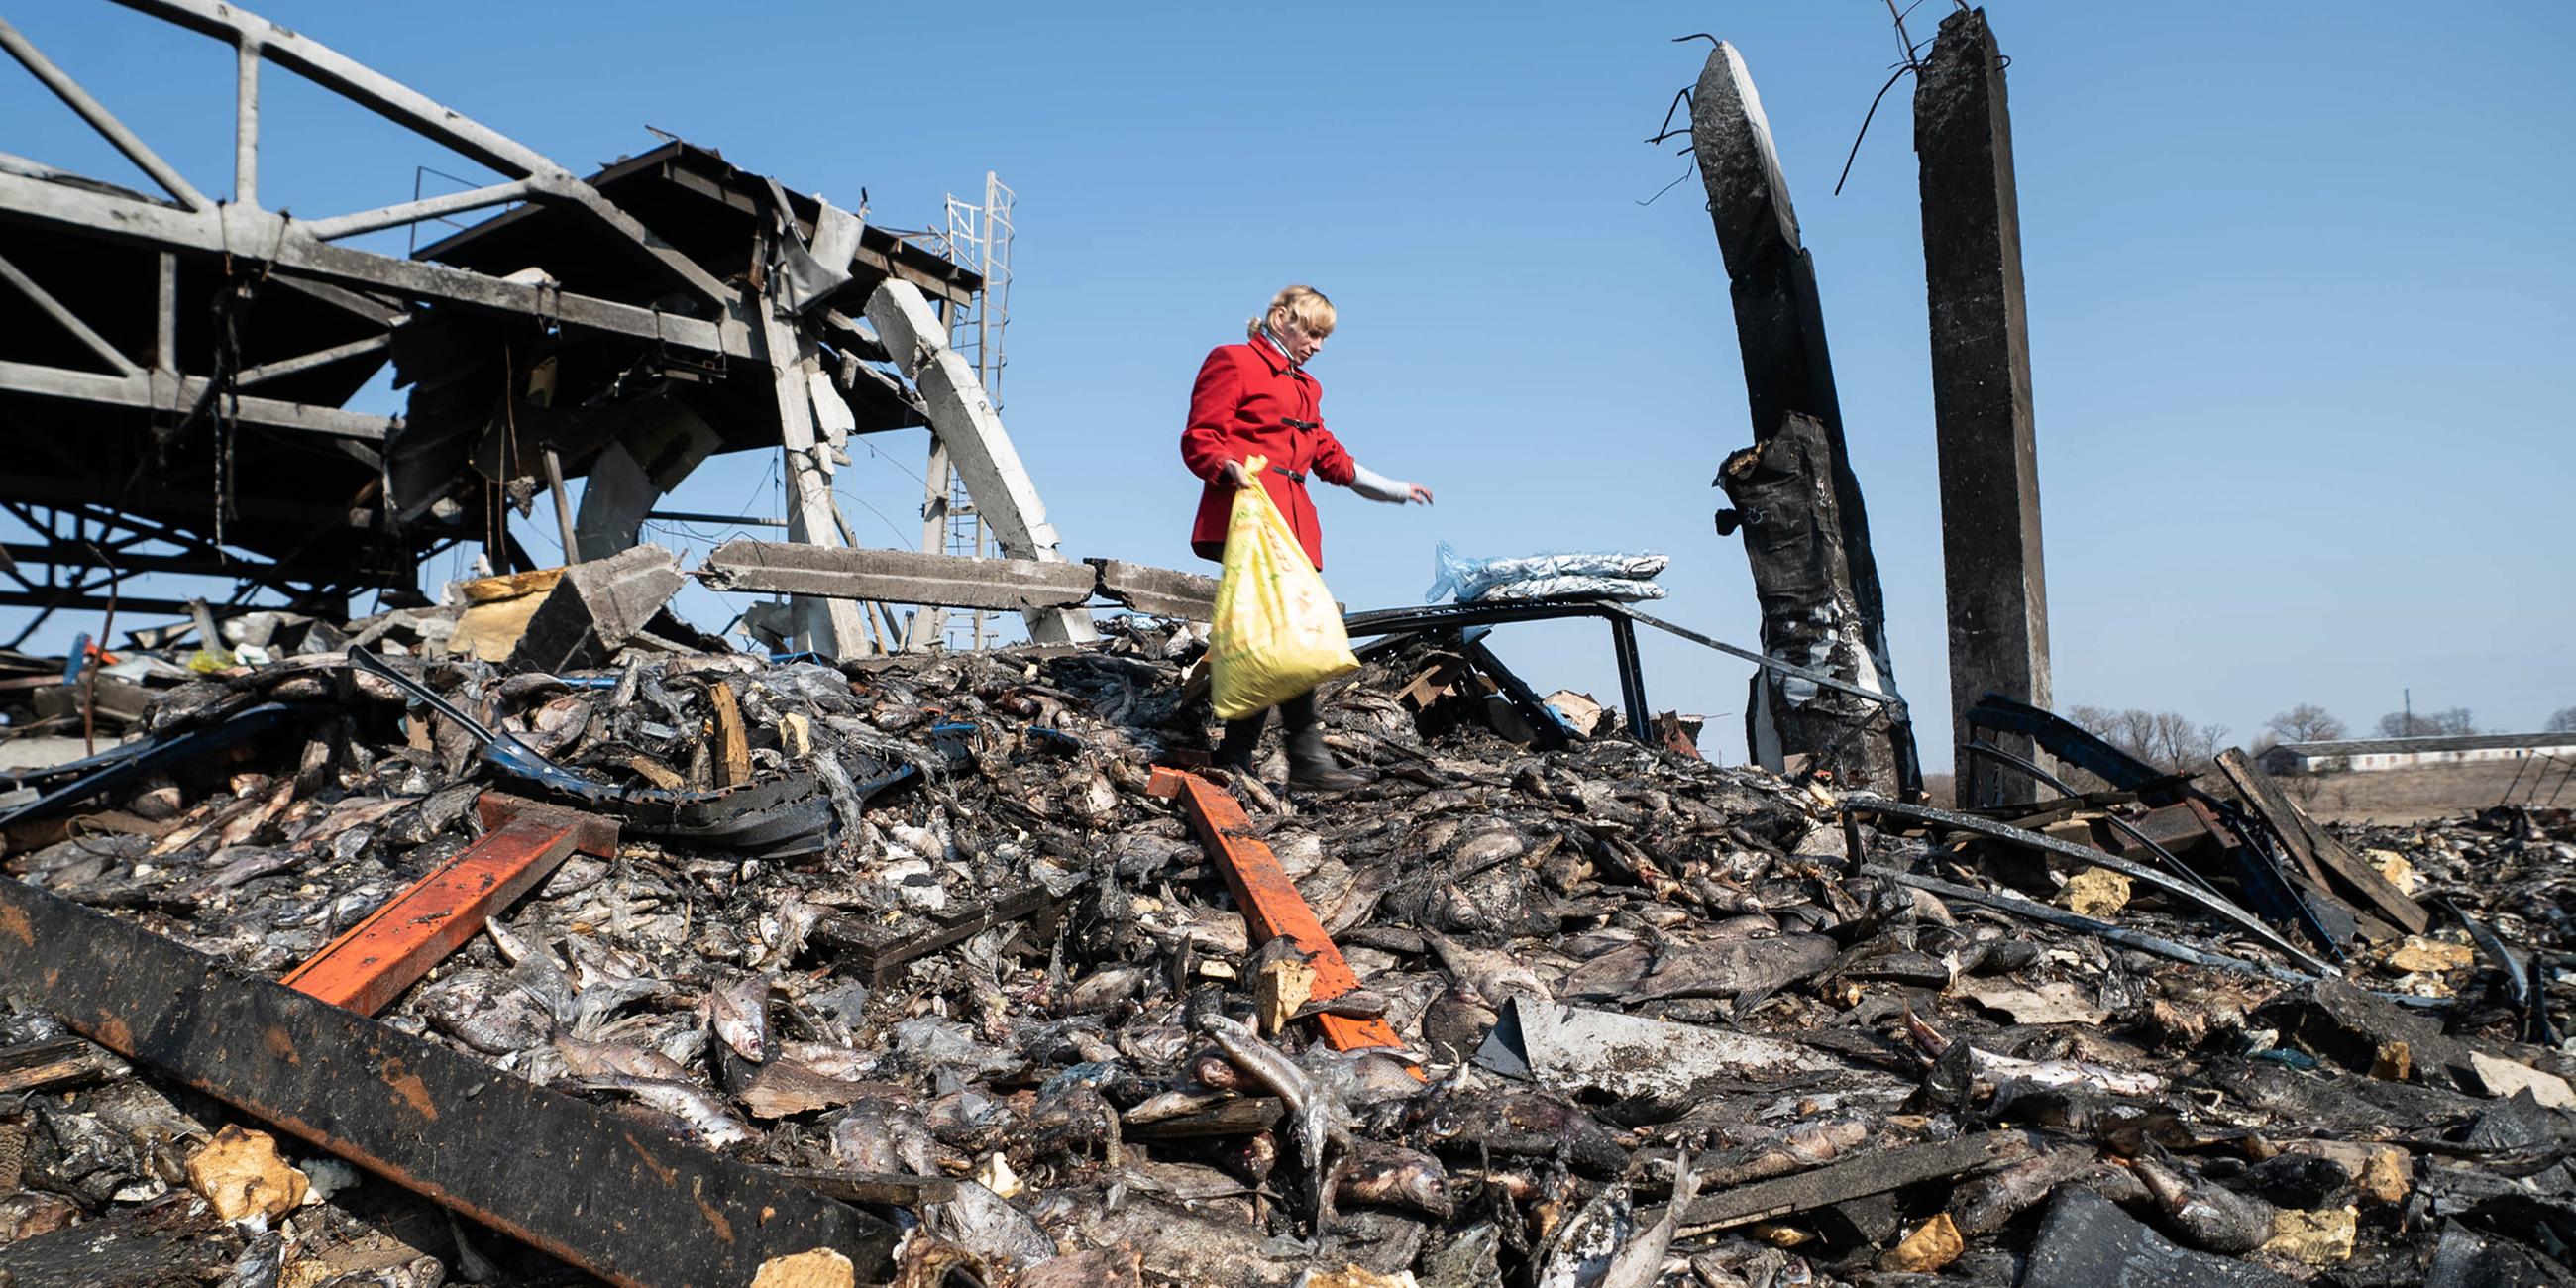 Berge von Fisch auf verbranntem Boden: Nach dem Angriff auf eine Fischfabrik nahe Kiew Ende März sucht diese Ukrainerin nach etwas Essbarem.